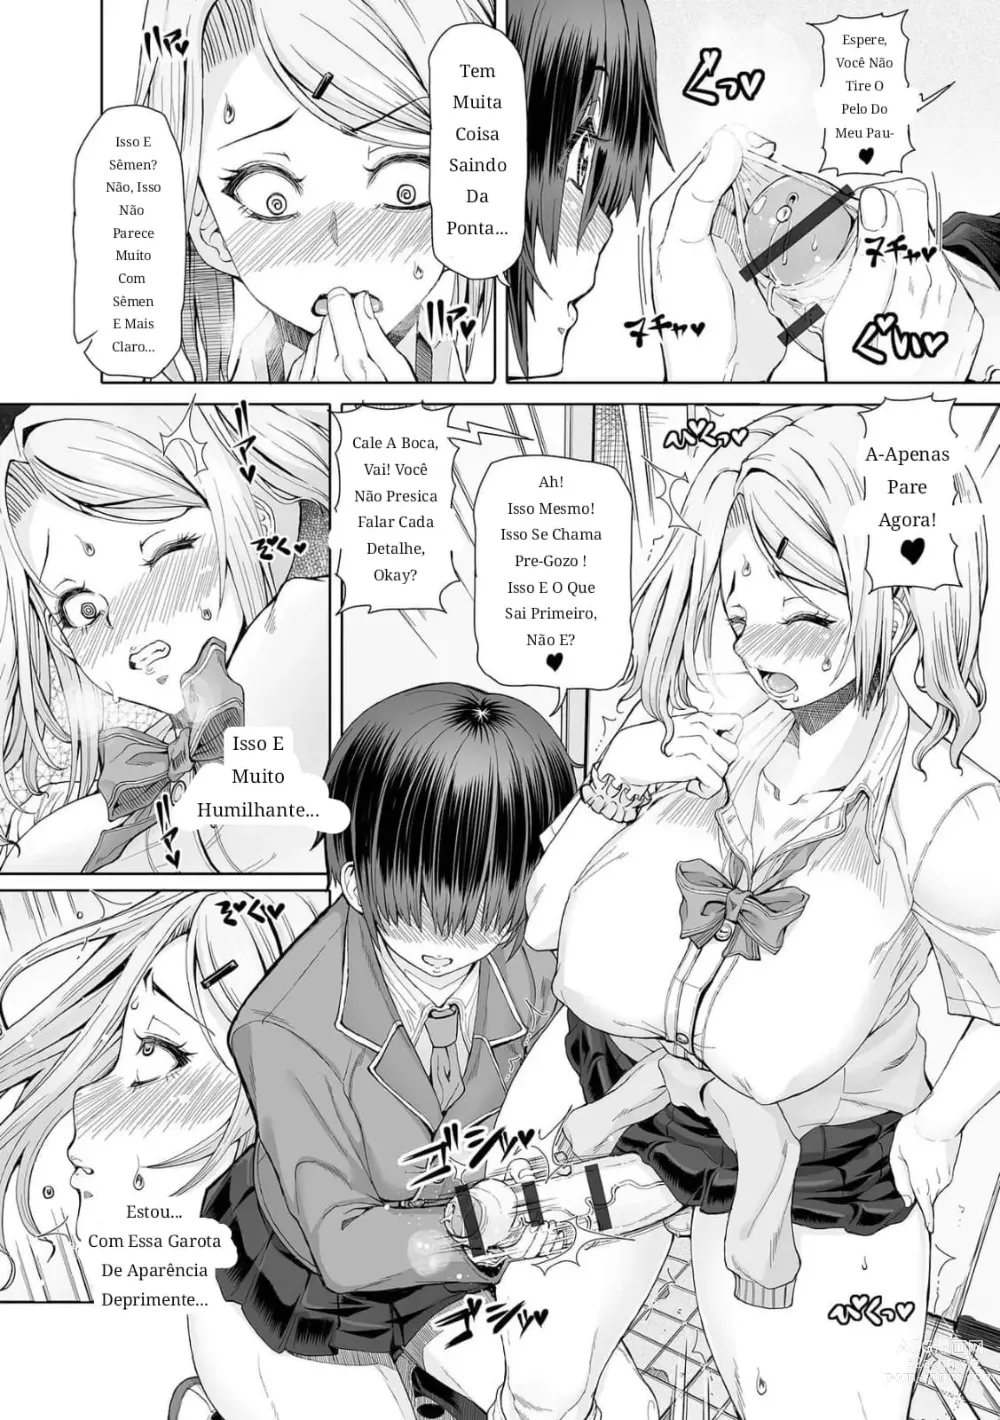 Page 9 of manga Himitsuna Futari